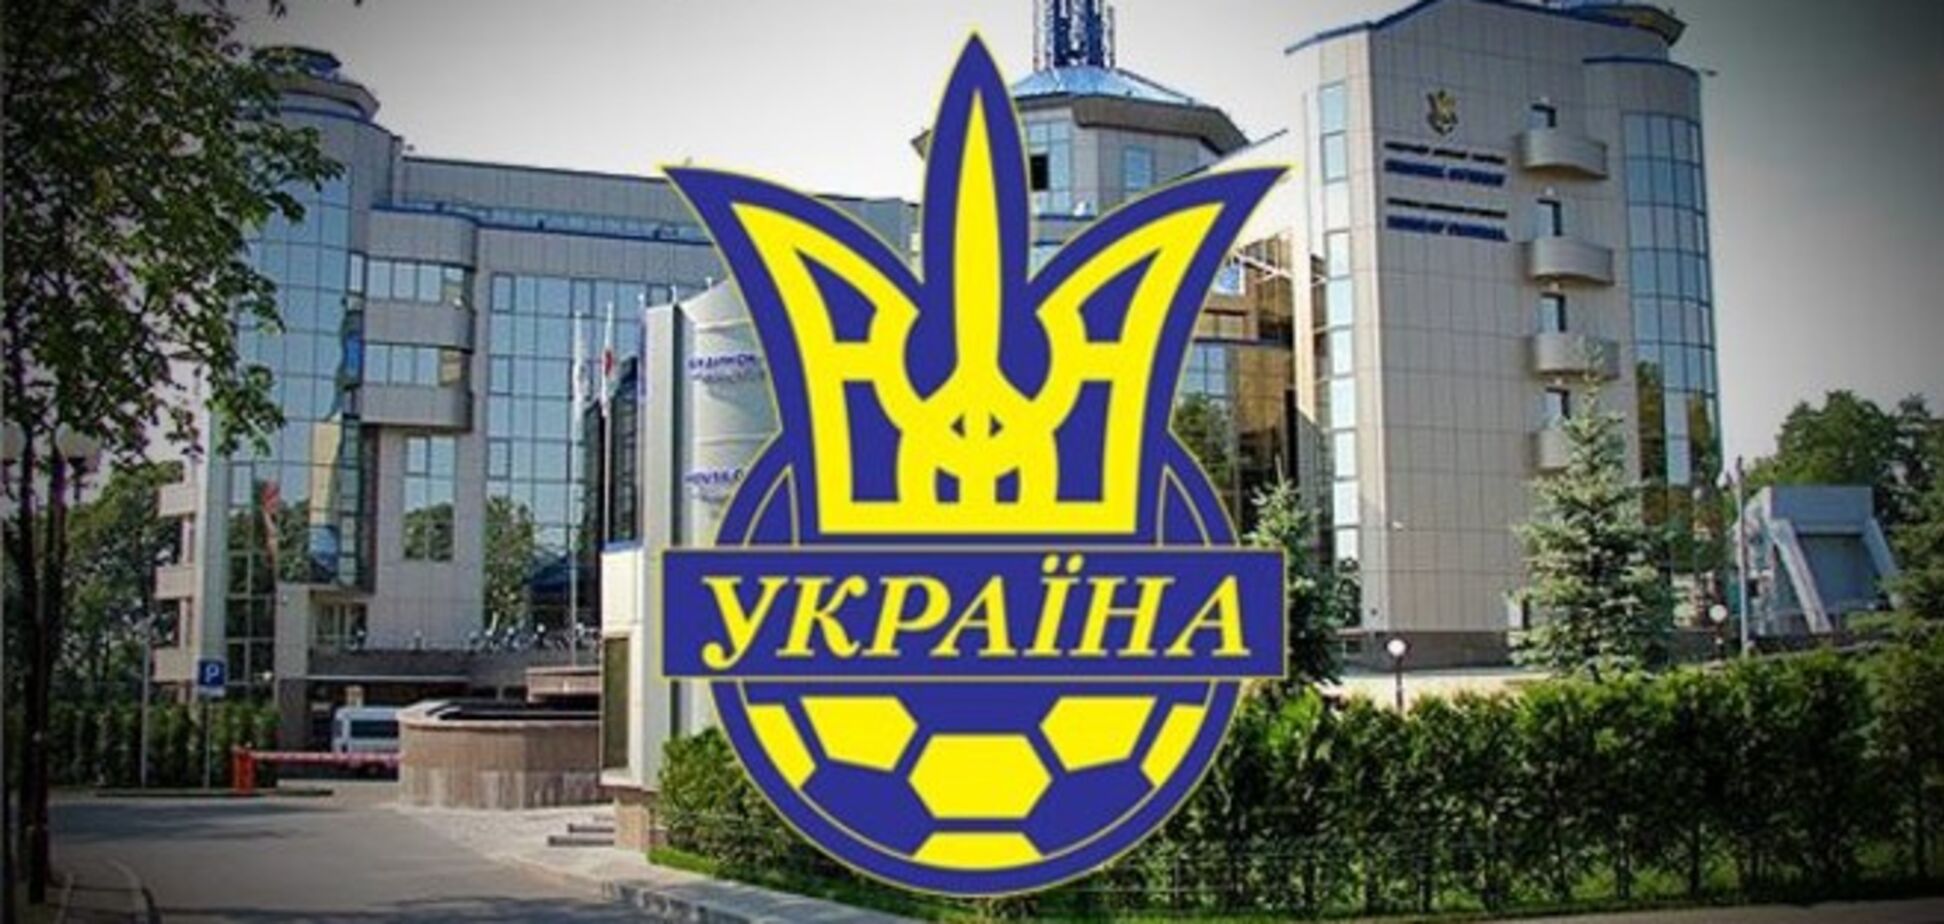 Визит делегации ФИФА в Украину не связан с крымским вопросом